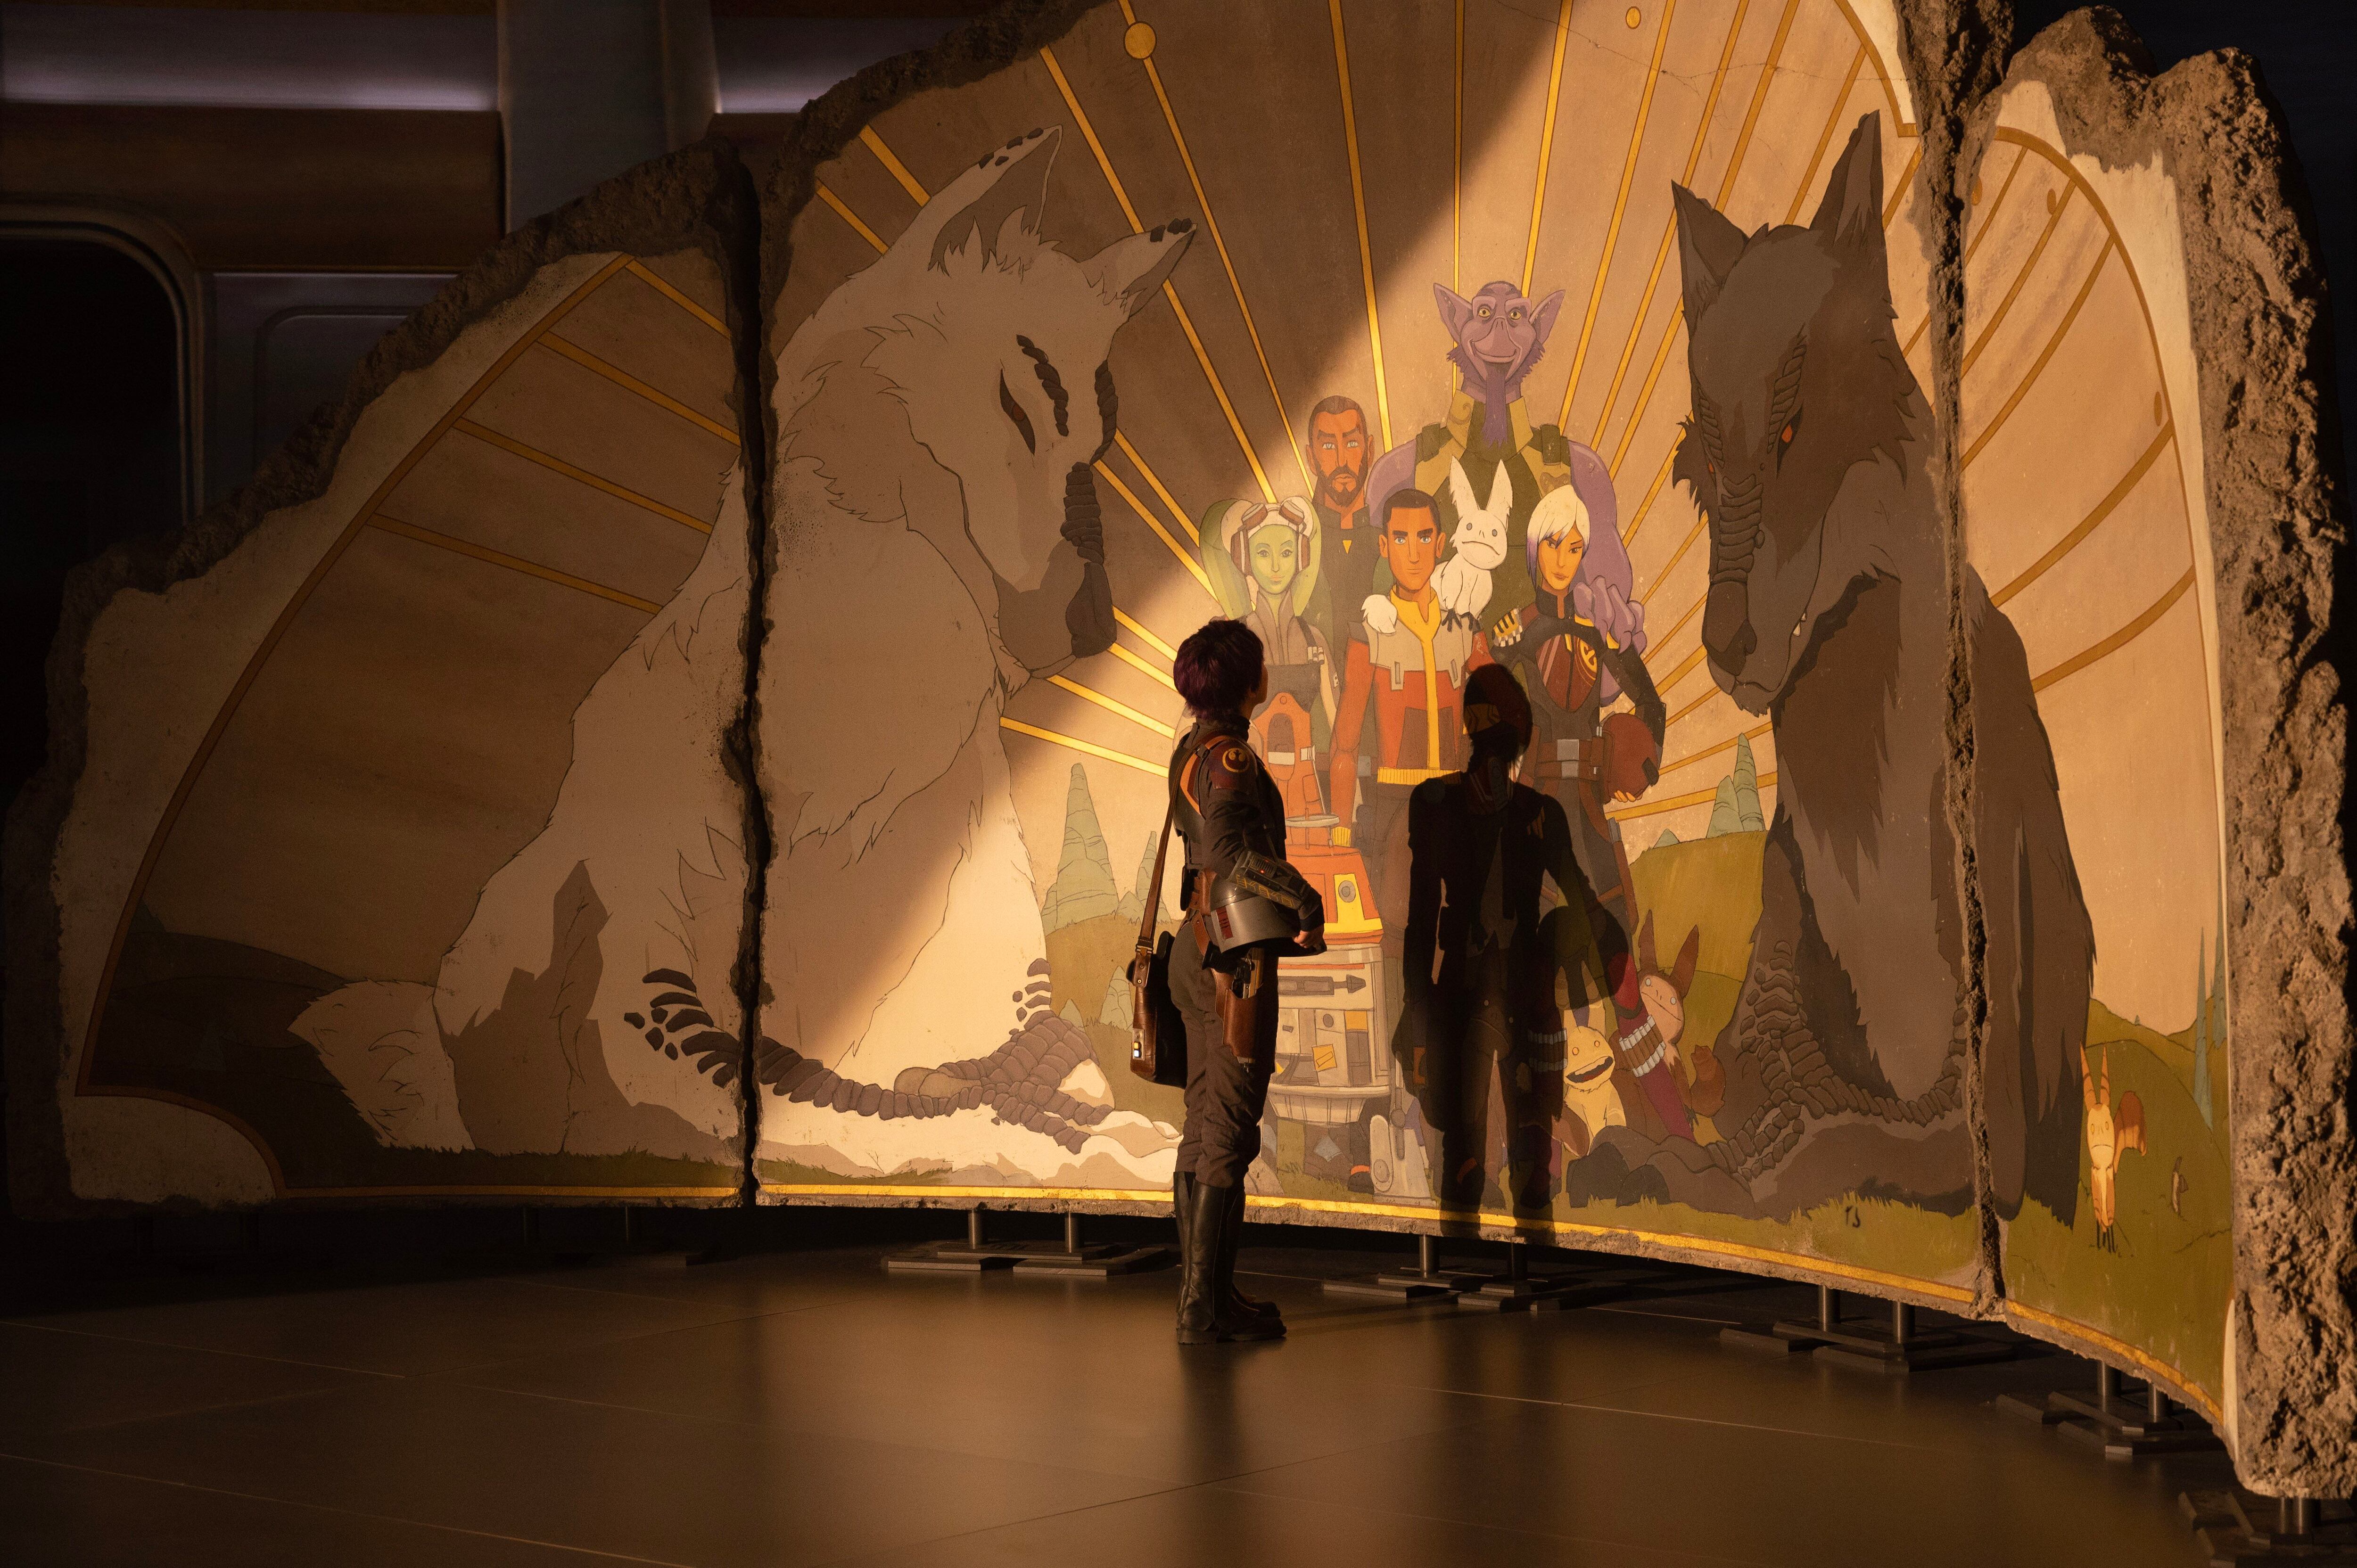 Fotograma de la serie de Disney+ 'Ahsoka'., con el mural de 'Rebels'.